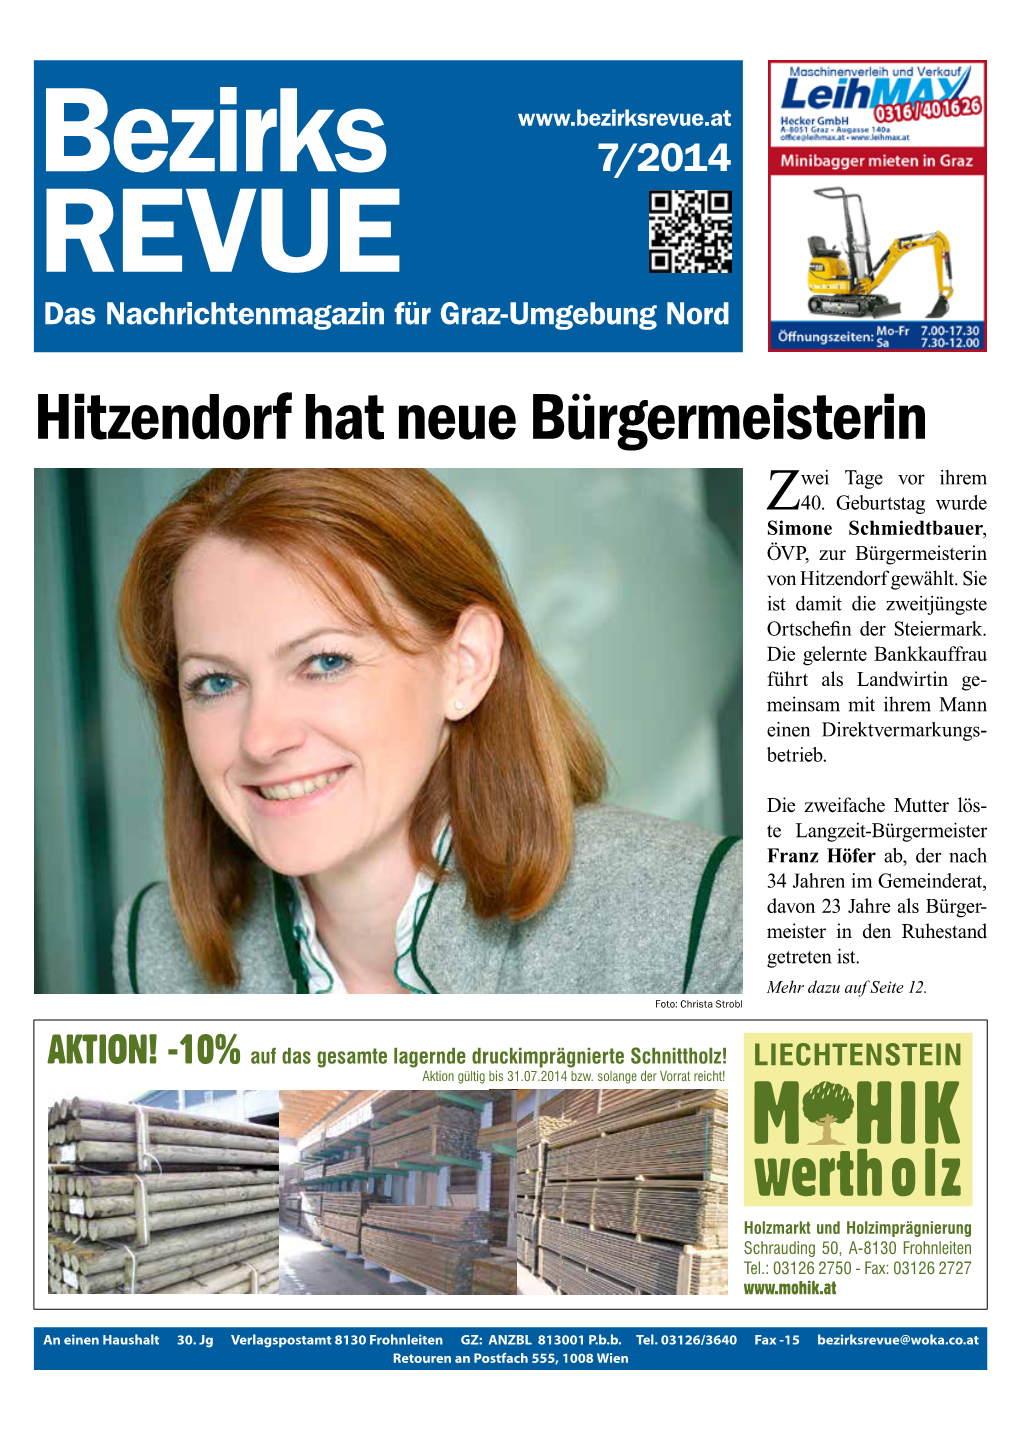 Hitzendorf Hat Neue Bürgermeisterin Wei Tage Vor Ihrem Z40